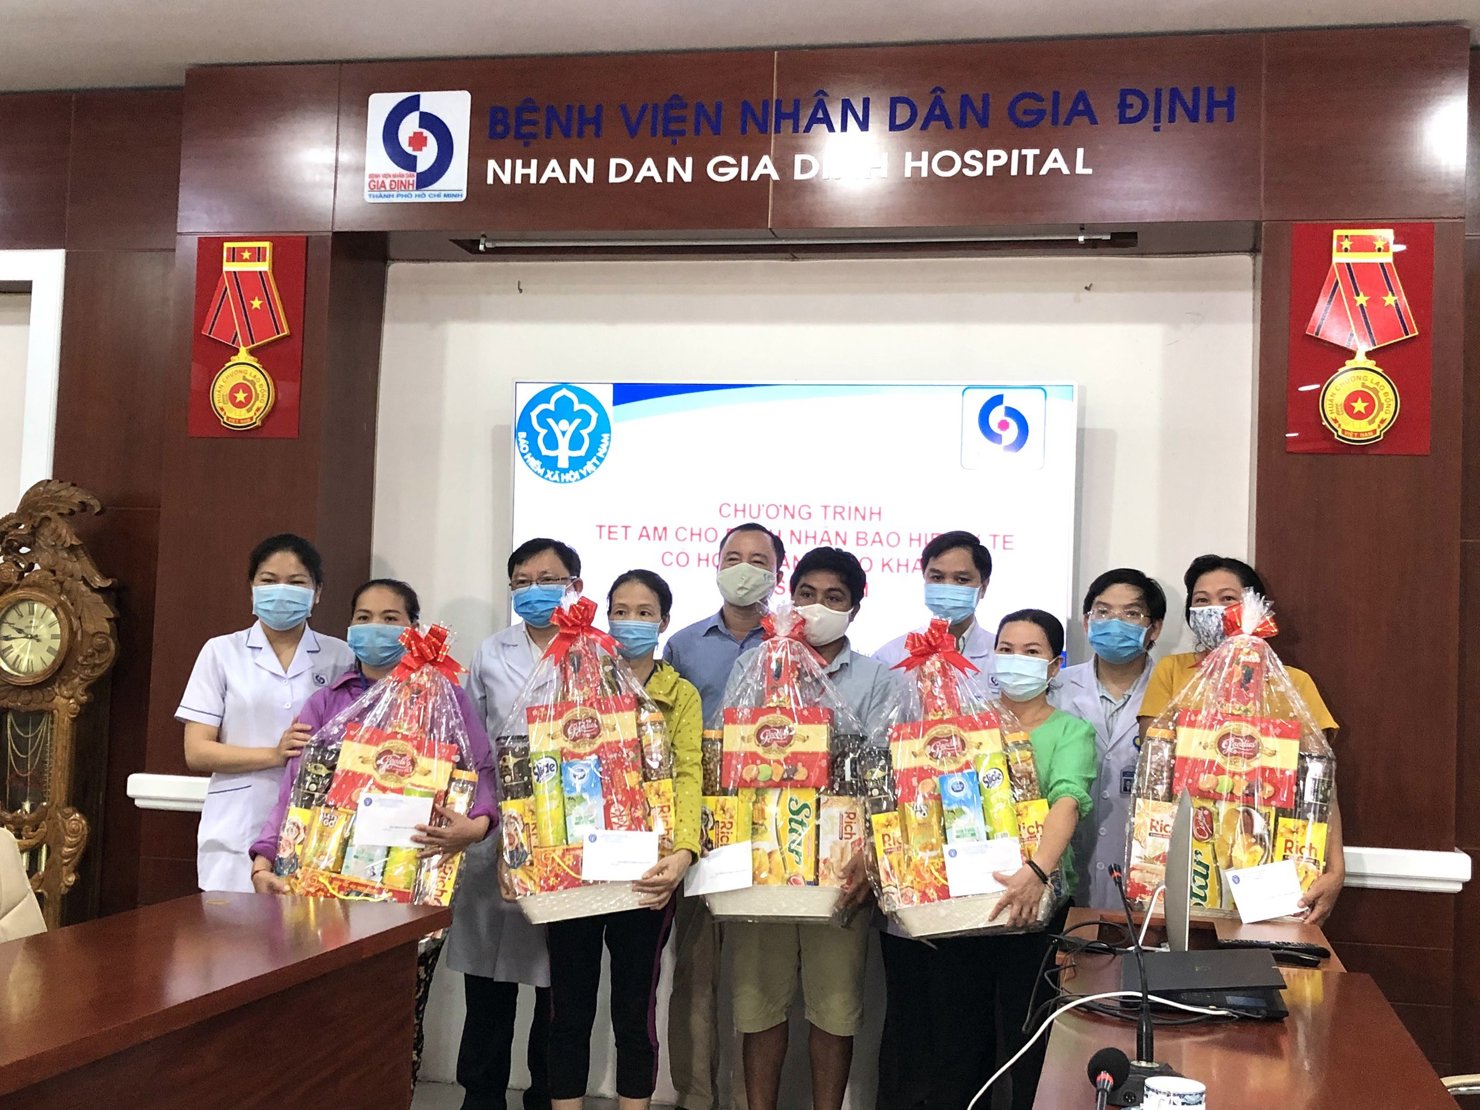 Đại diện BHXH TP. Hồ Chí Minh tặng quà Tết cho bệnh nhân bảo hiểm y tế có hoàn cảnh khó khăn tại Bệnh viện Nhân dân Gia Định.